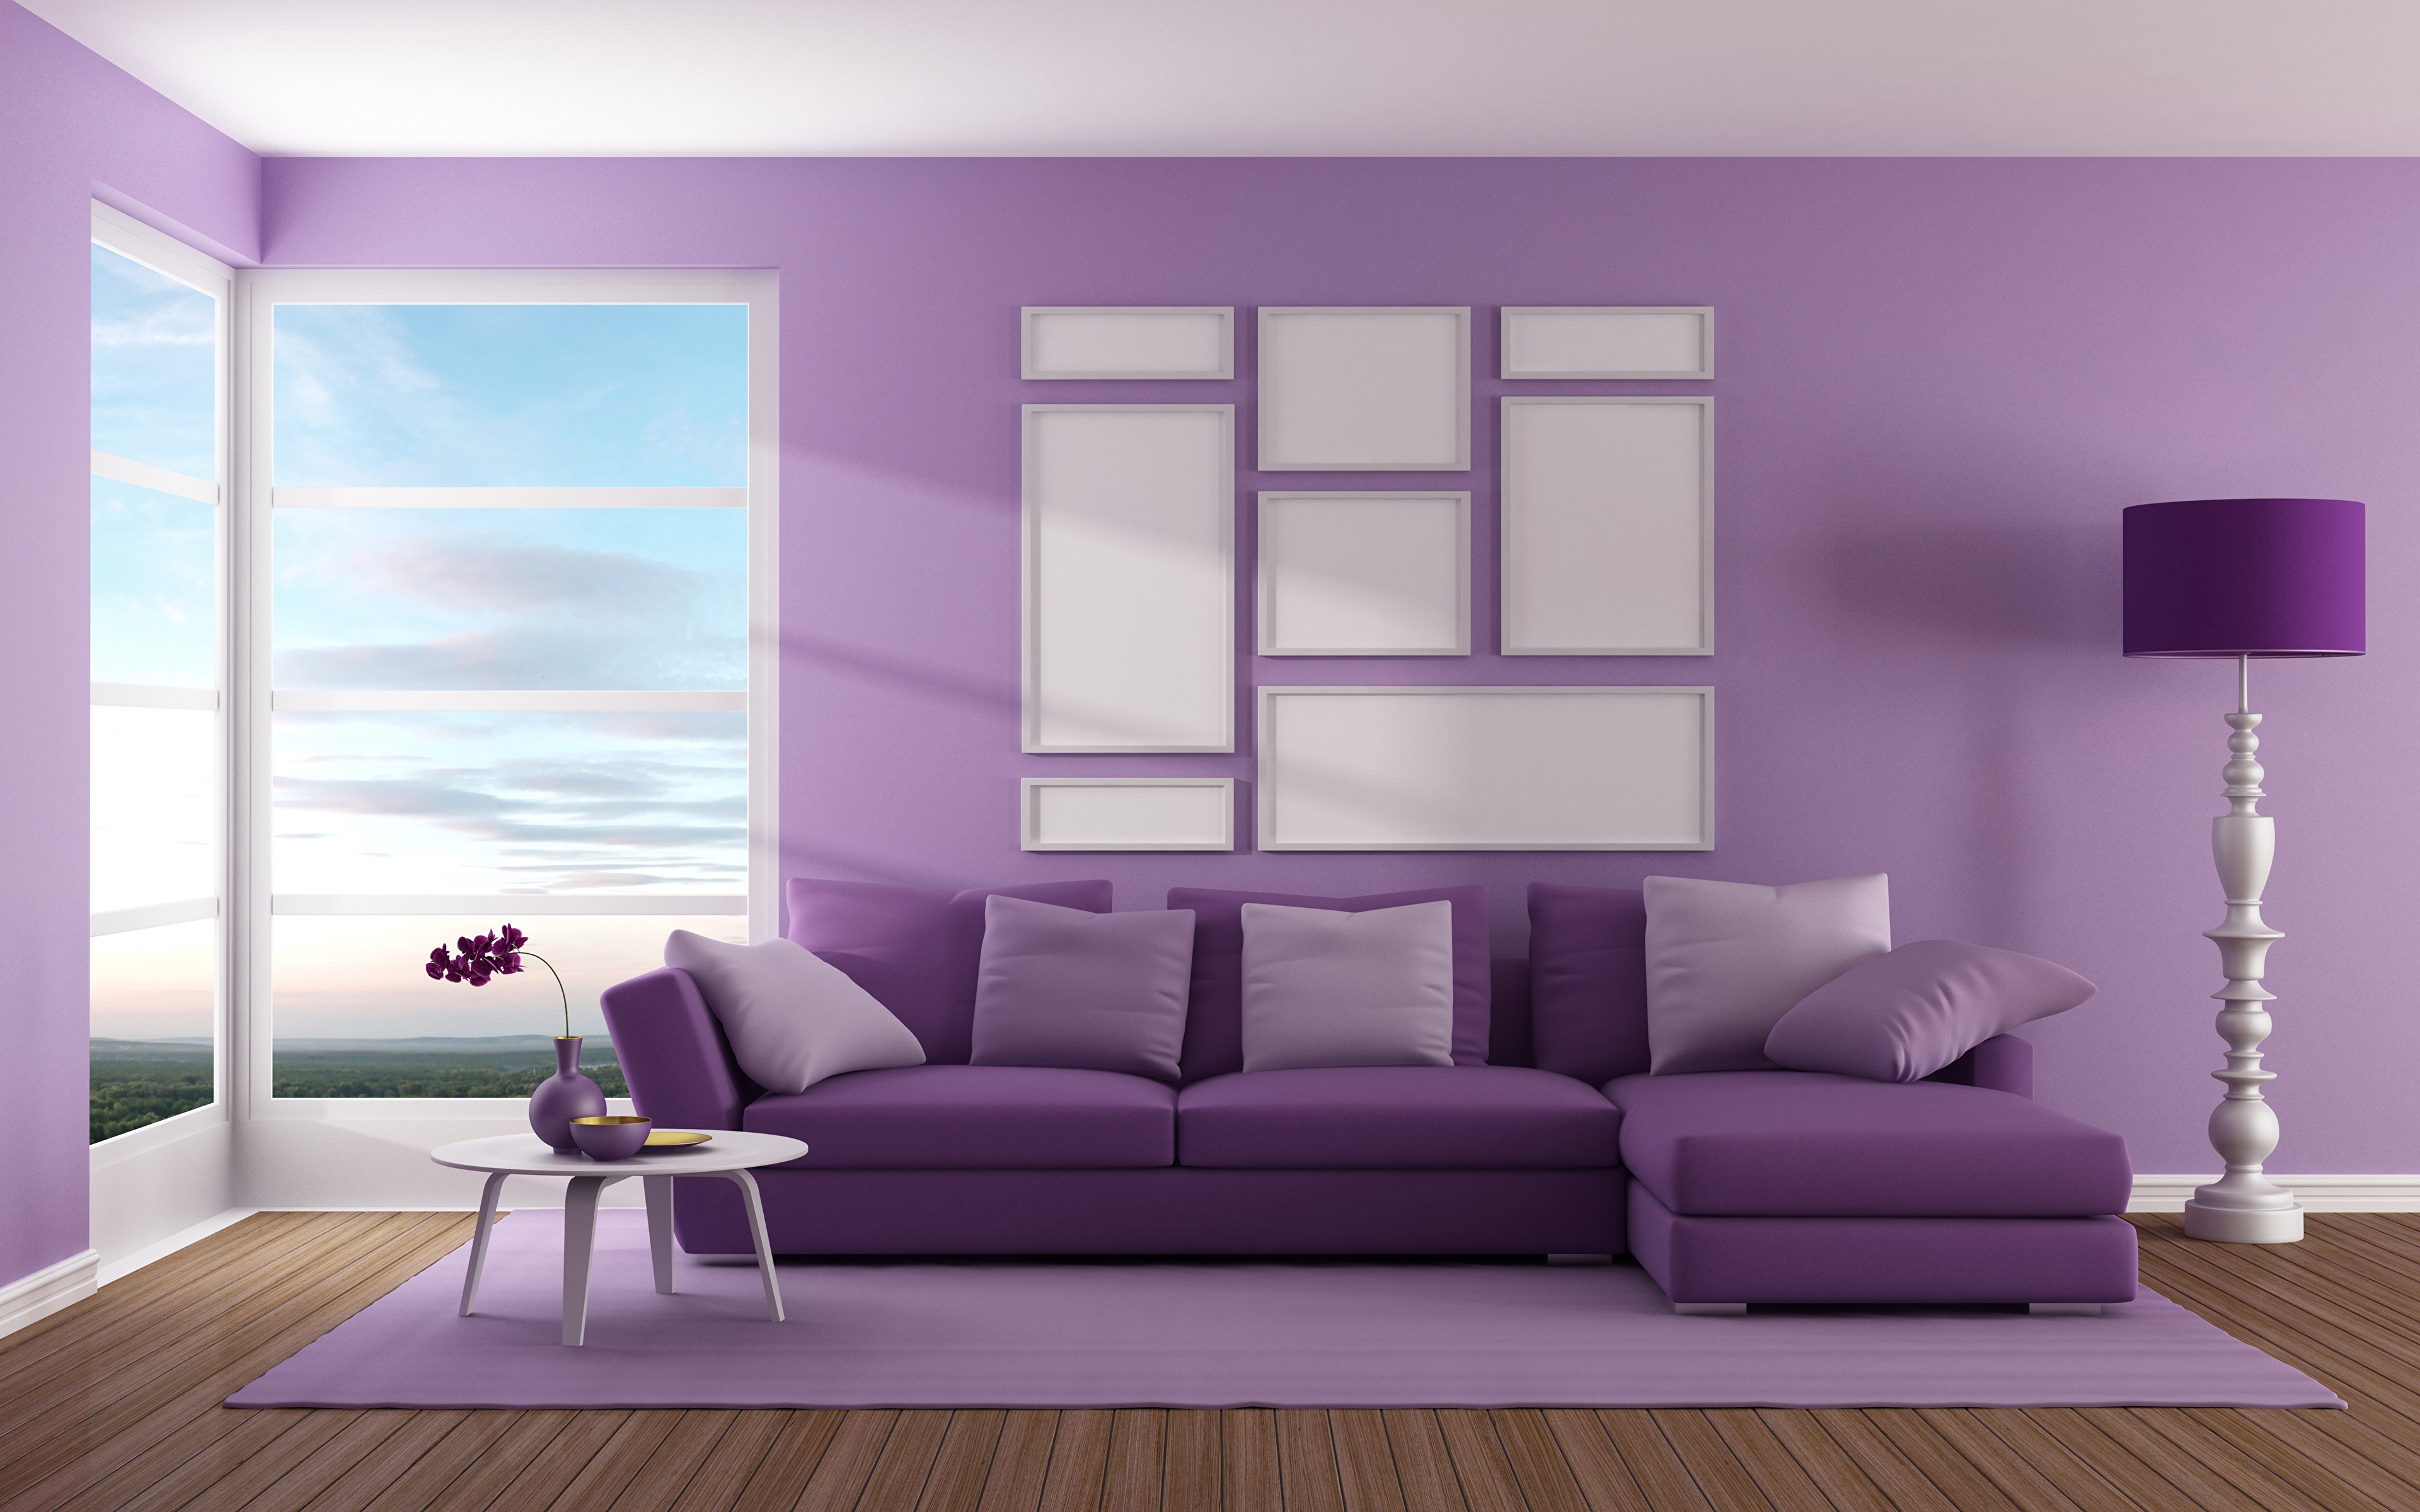 Opstand Plakken technisch Images Violet 3D Graphics Interior Couch Pillows 3840x2400